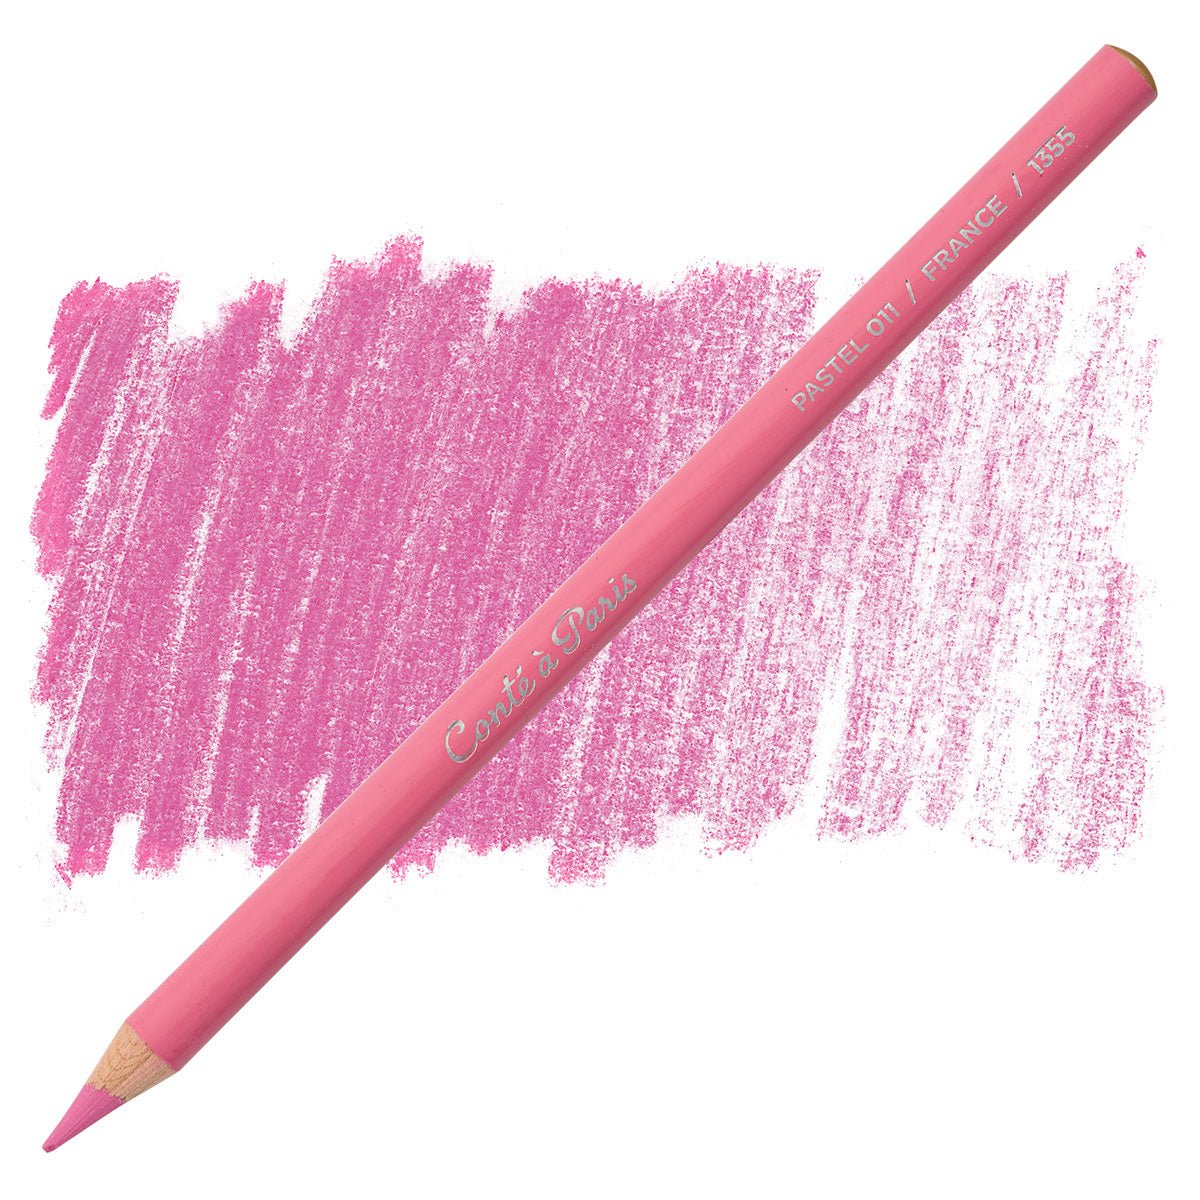 Conte Pastel Pencil 011 Pink - theartshop.com.au